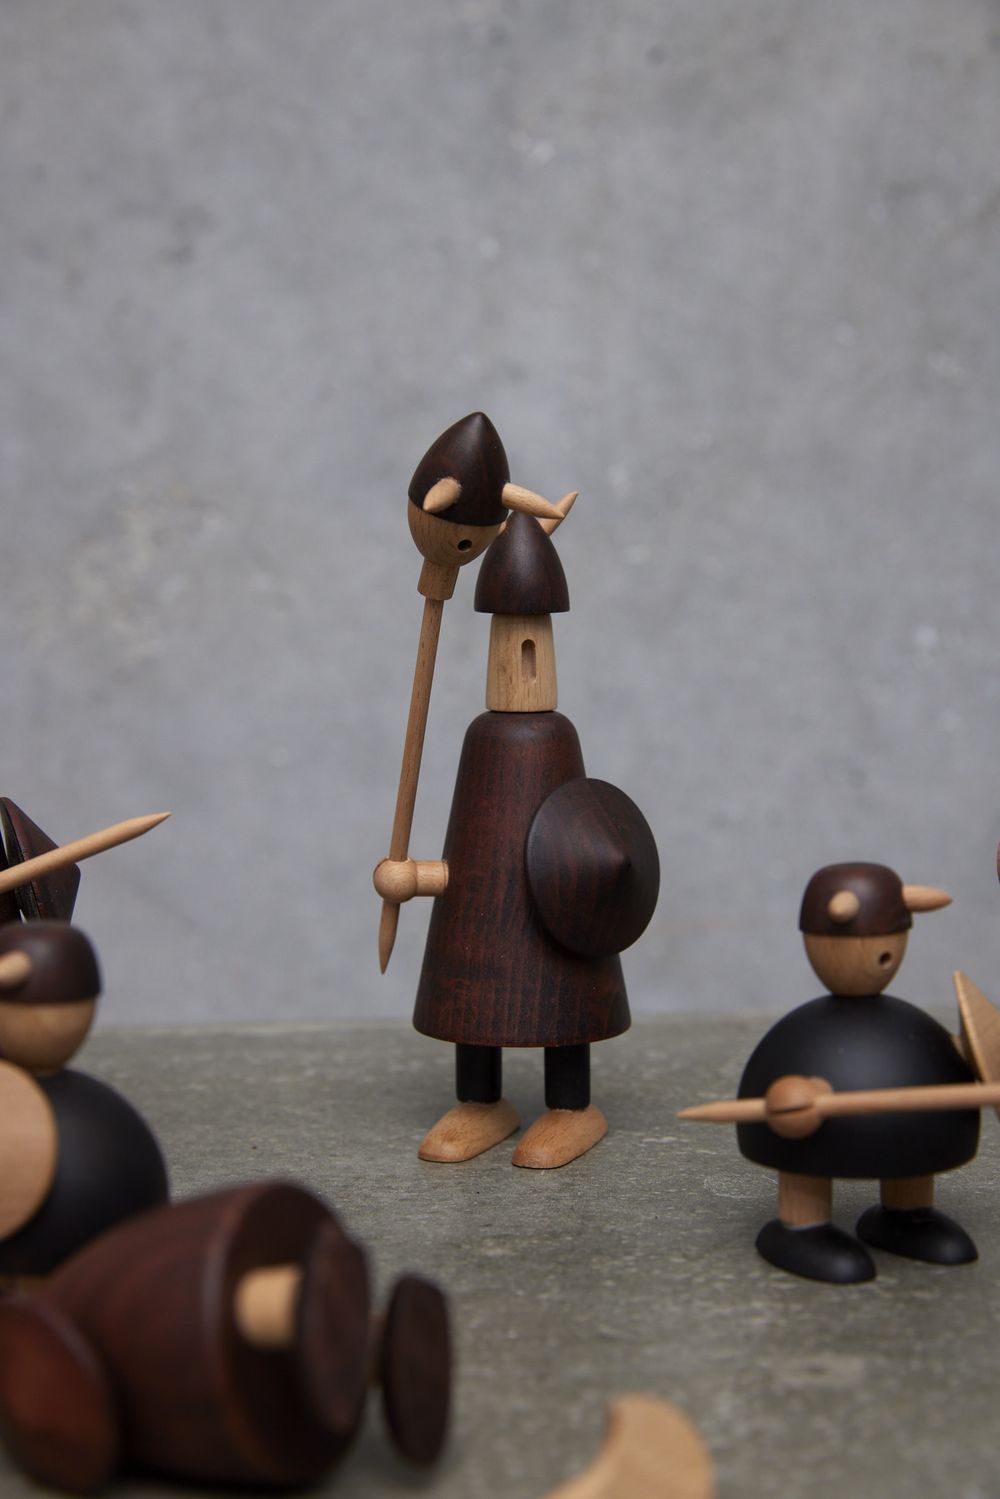 Andersen mobili i vichinghi della figura di legno della Danimarca, set di 3